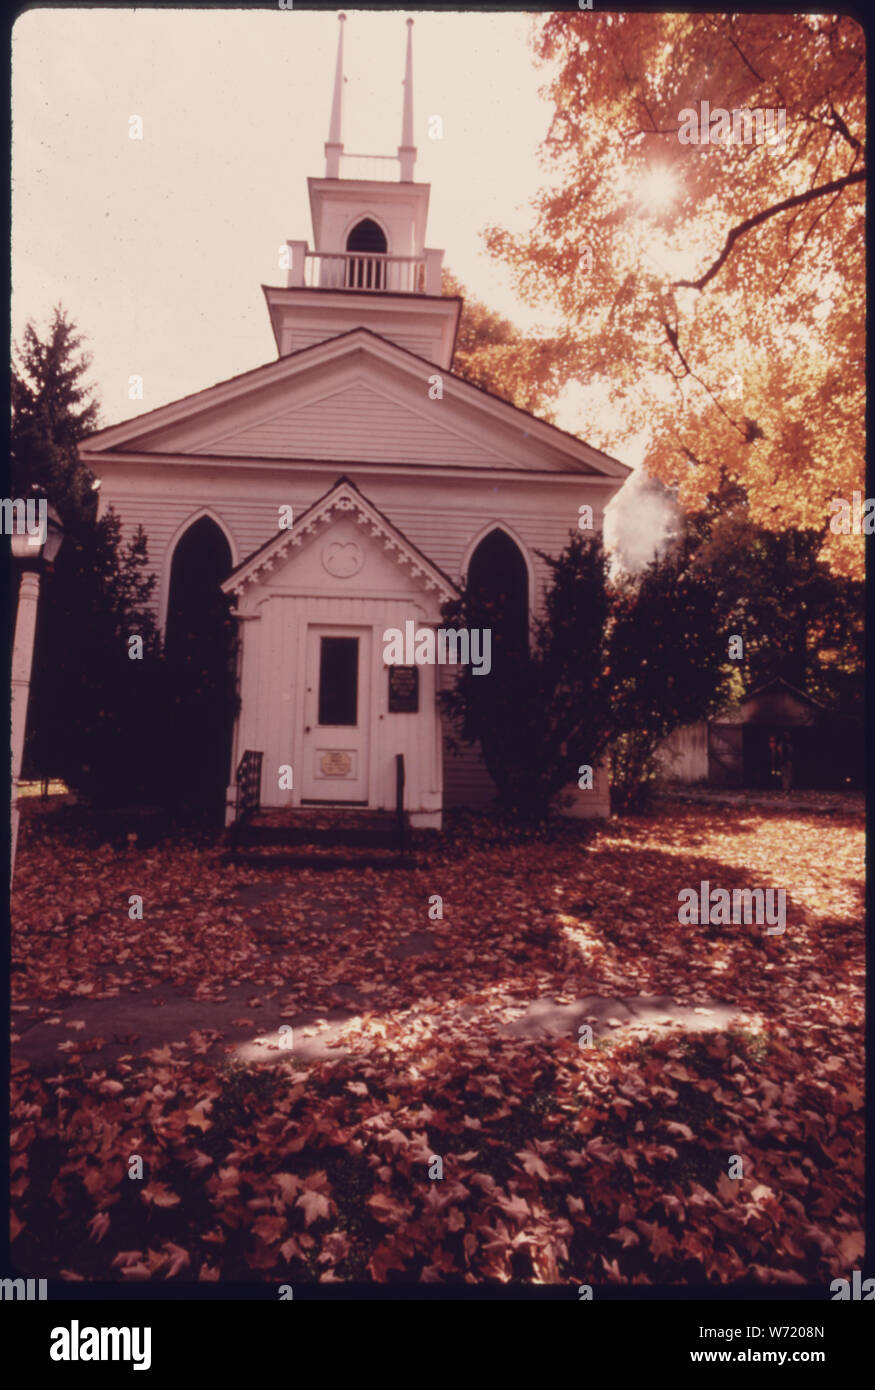 L'Église épiscopale, BRONSON église paroissiale Construite en 1835 DANS LE STYLE NÉO-grec dans la péninsule, l'Ohio, près de Akron. Il est typique de l'ARCHITECTURE DE L'OUEST DANS LA ZONE DE RÉSERVE. Il a été rénové dans la manière gothique victorien Carpenter en 1888, et a été restauré en 1968. Bien QU'IL NE SOIT PLUS UTILISÉ COMME UNE ÉGLISE, IL EST À LA DISPOSITION DU PUBLIC. Le village est situé à l'intérieur de la Cuyahoga Valley National Recreation Area QUI A ÉTÉ SIGNÉ EN DÉCEMBRE 1974 Banque D'Images